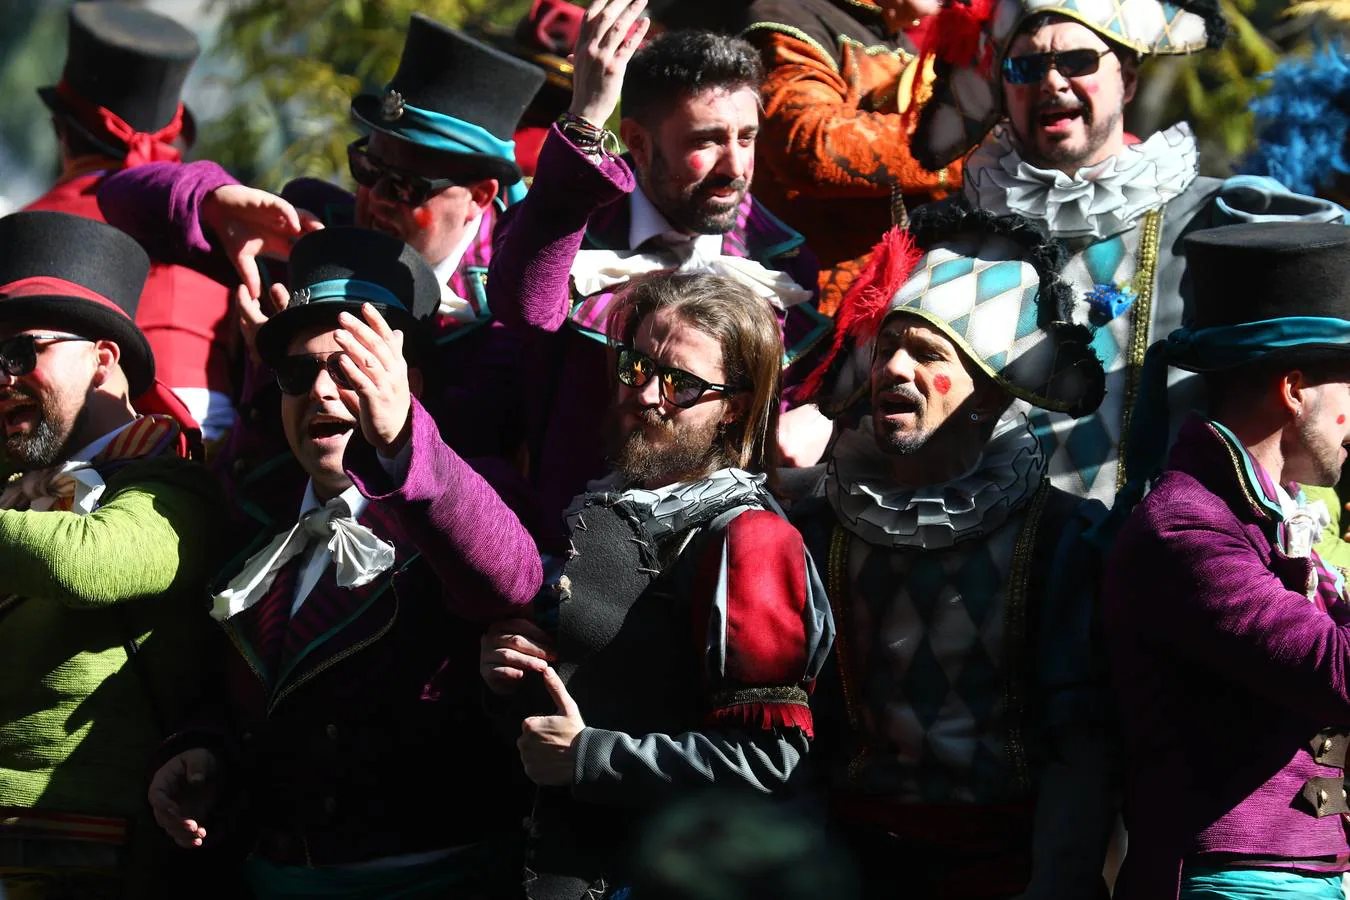 En fotos: El carrusel de coros del Domingo de Carnaval